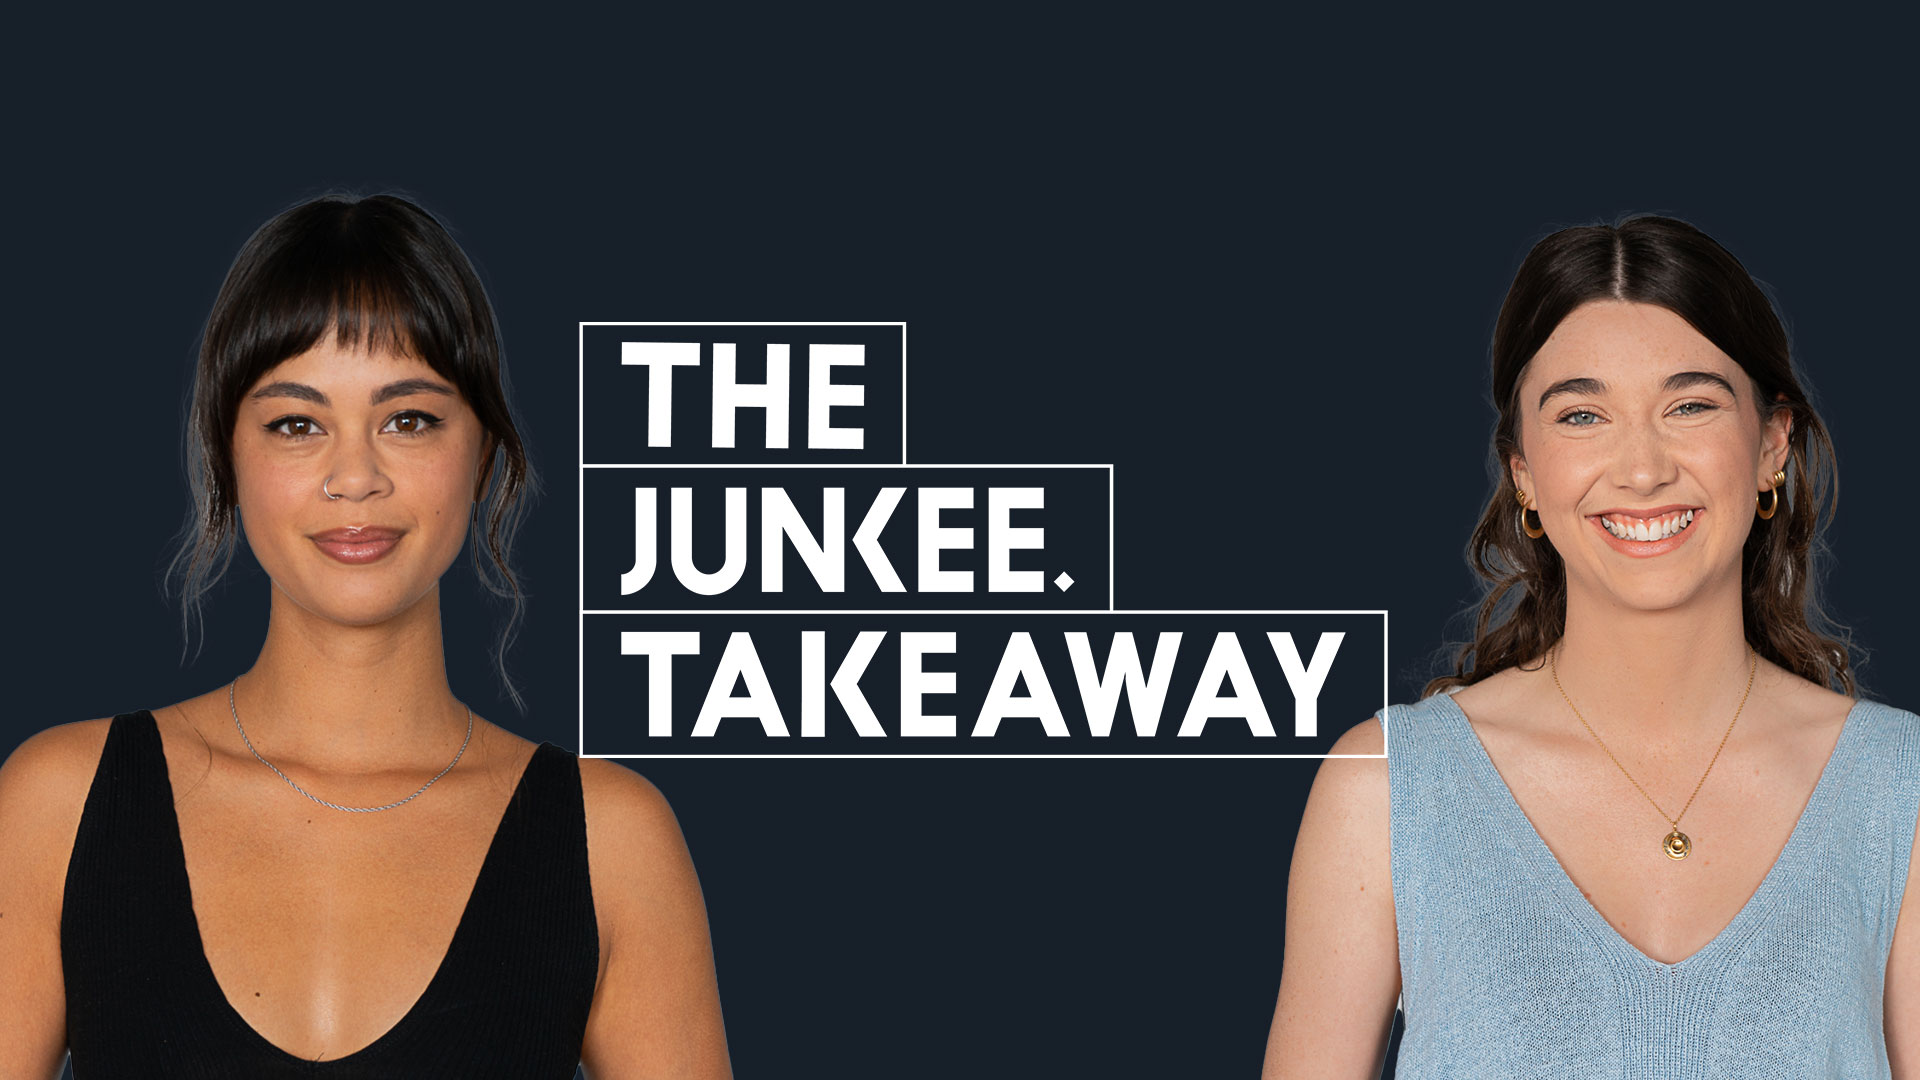 The Junkee Takeaway Team